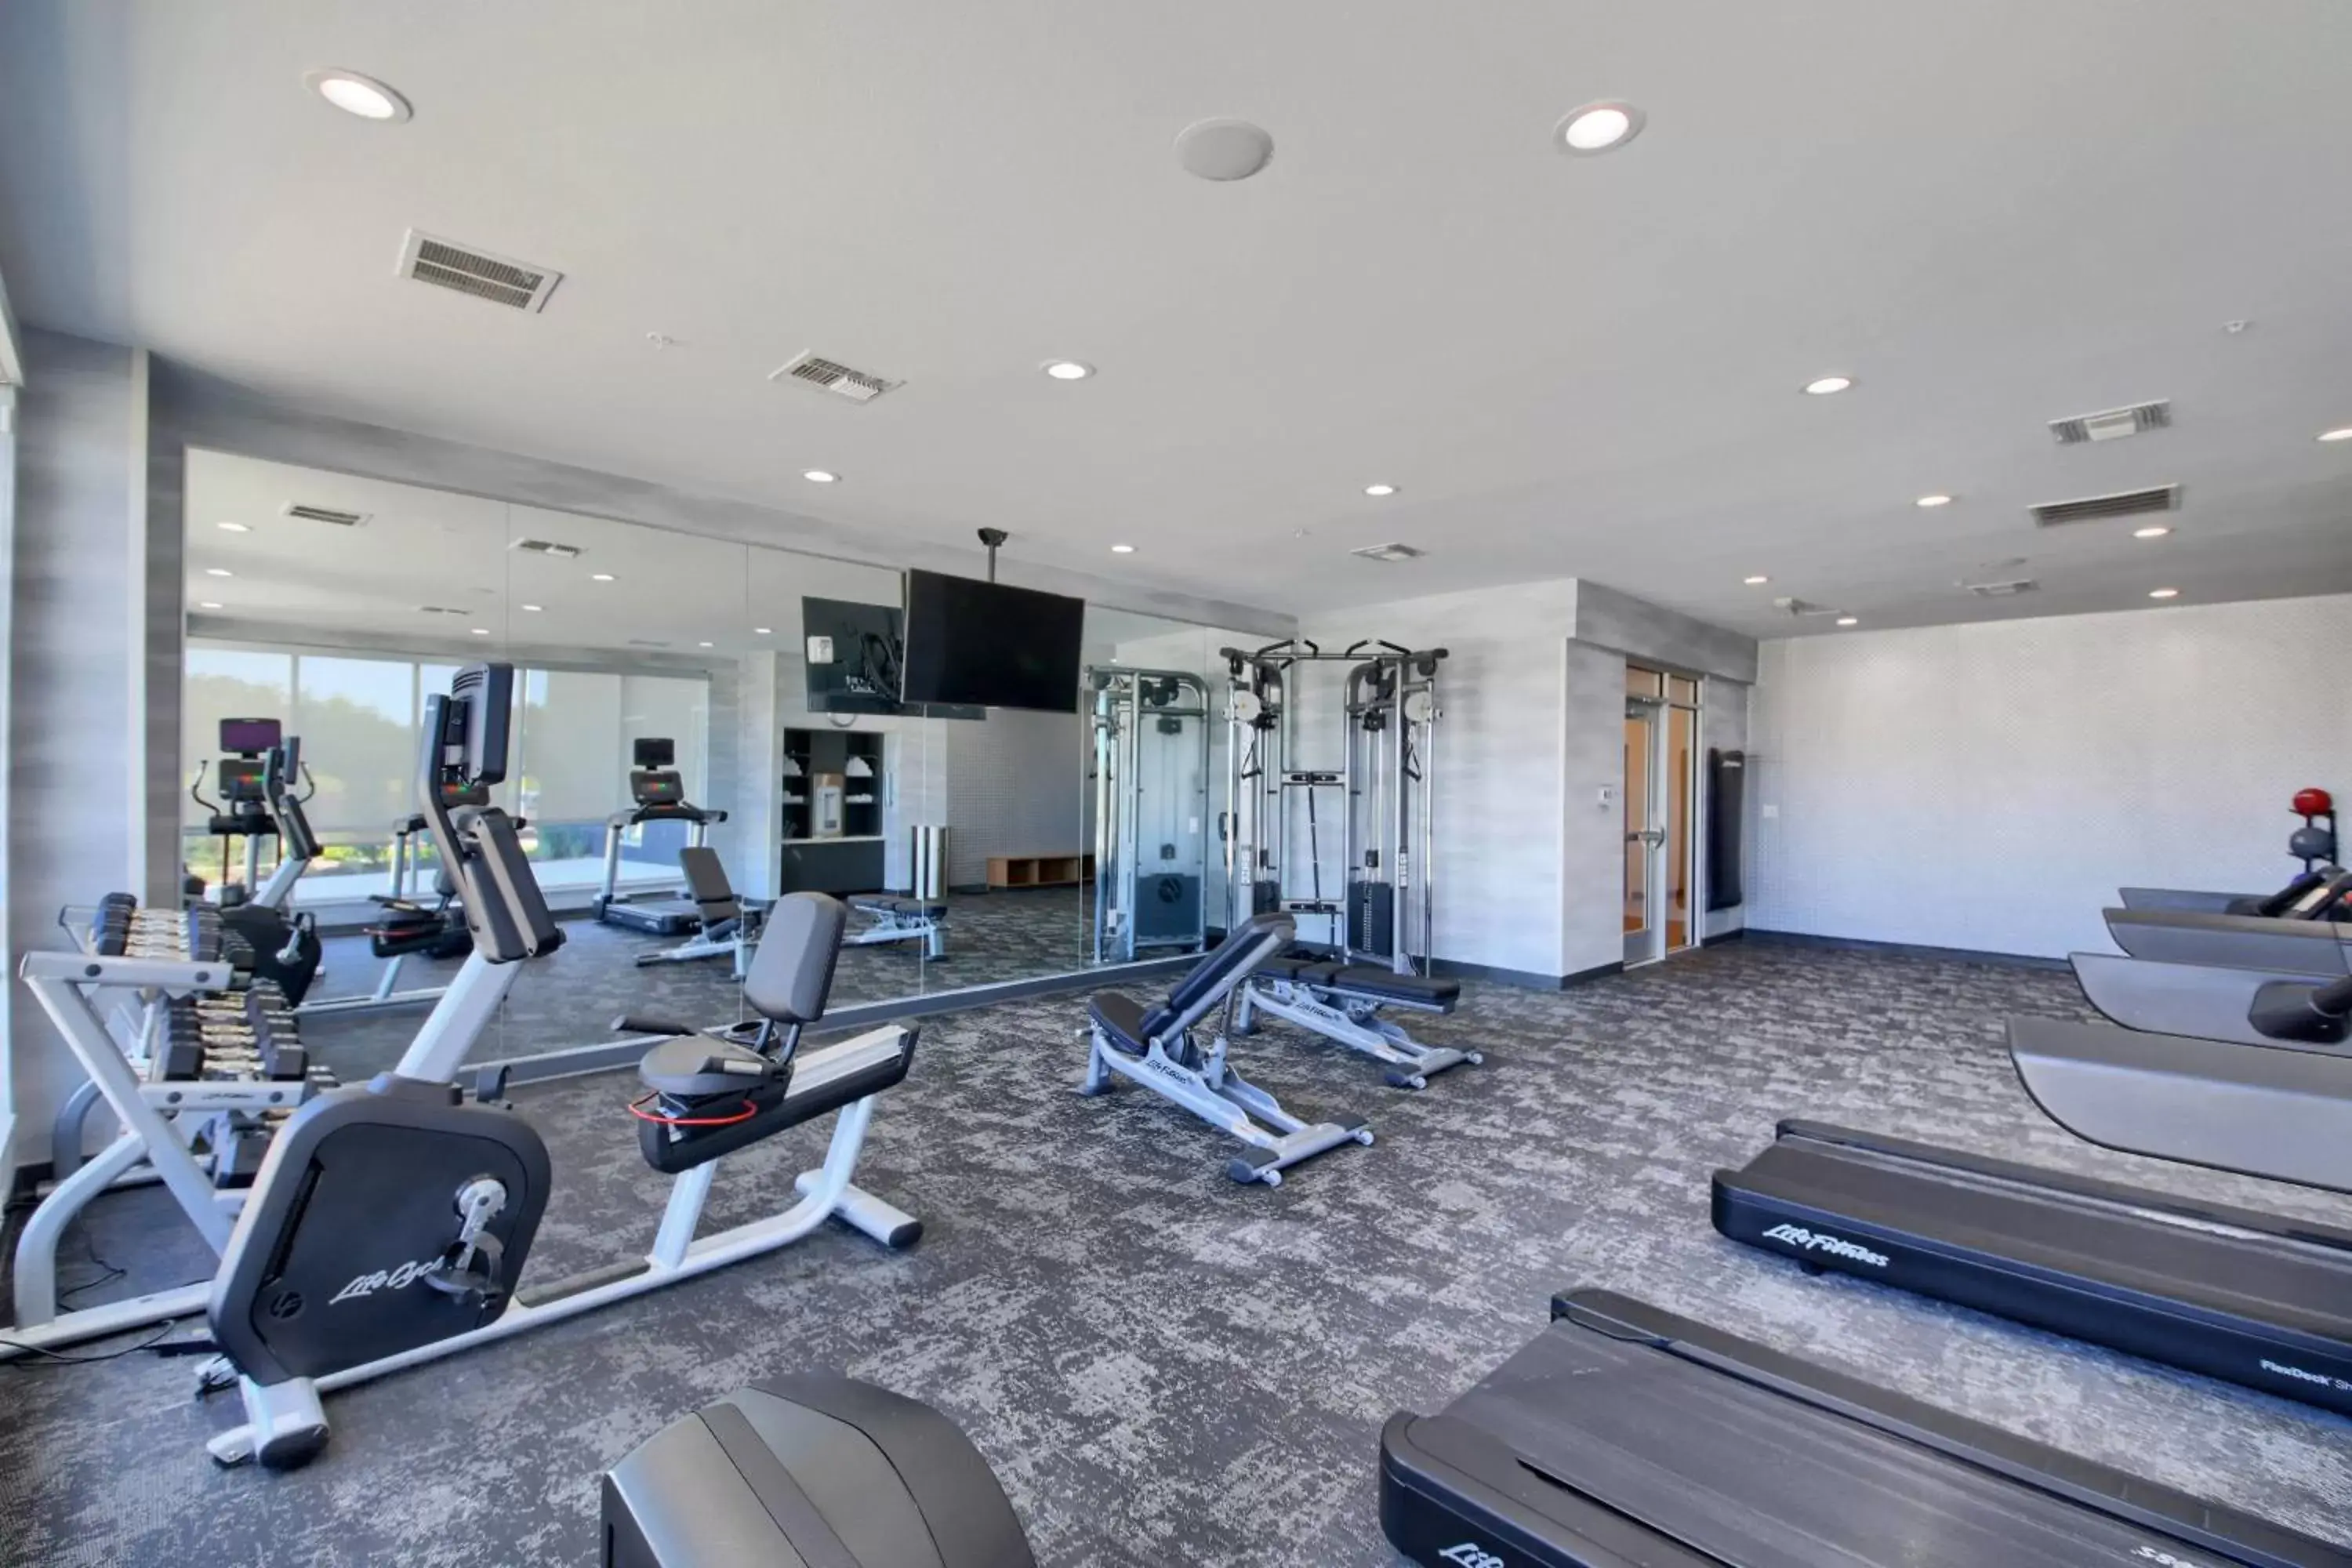 Fitness centre/facilities, Fitness Center/Facilities in Fairfield Inn & Suites by Marriott Dallas Cedar Hill